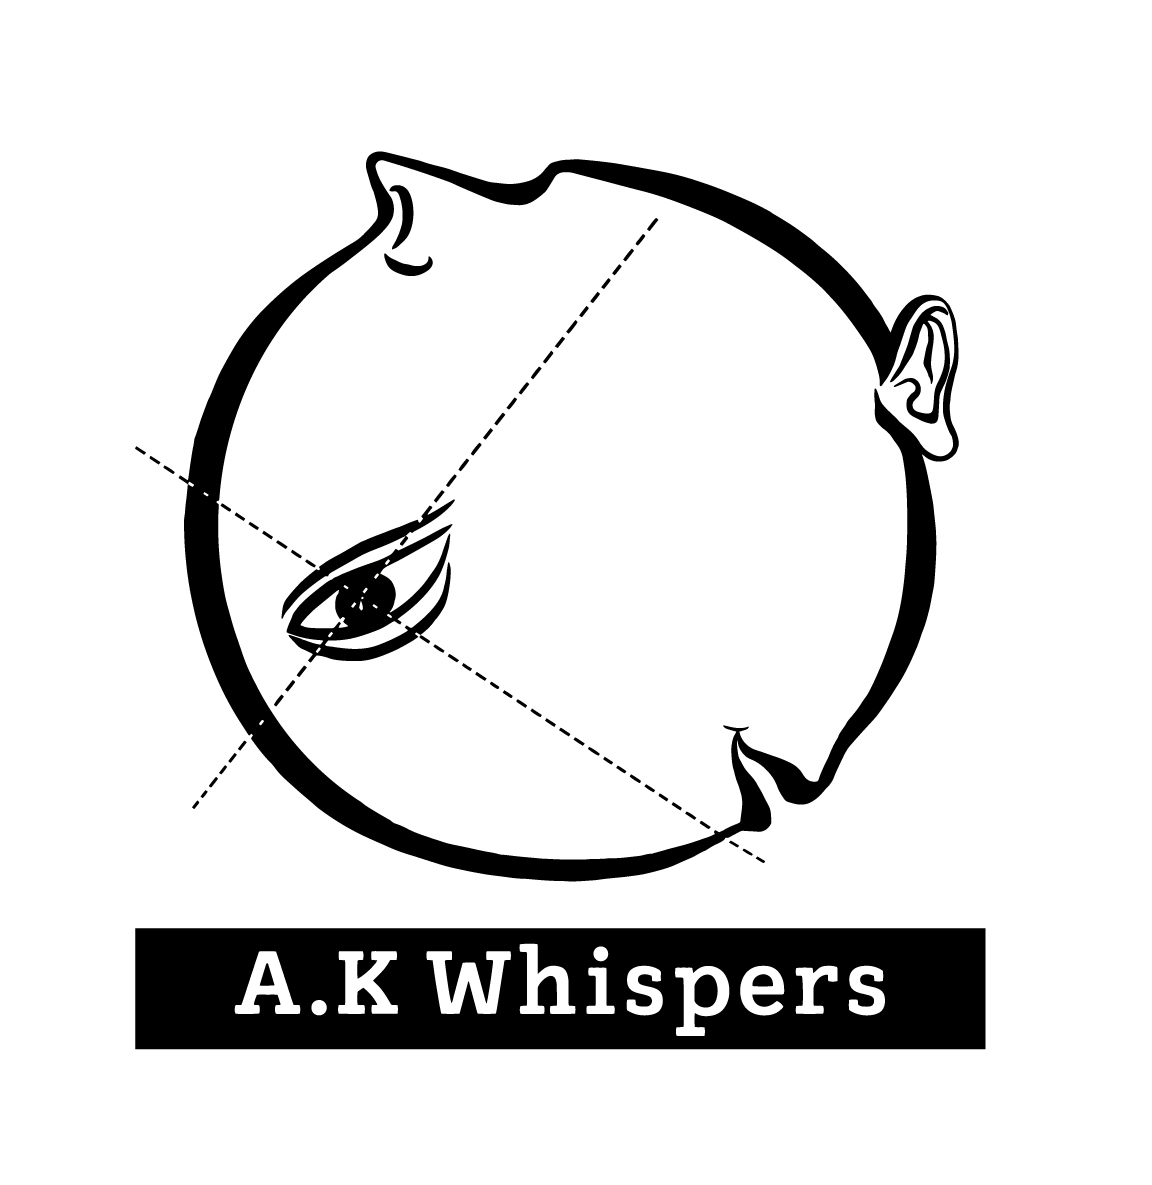 AK Whispers